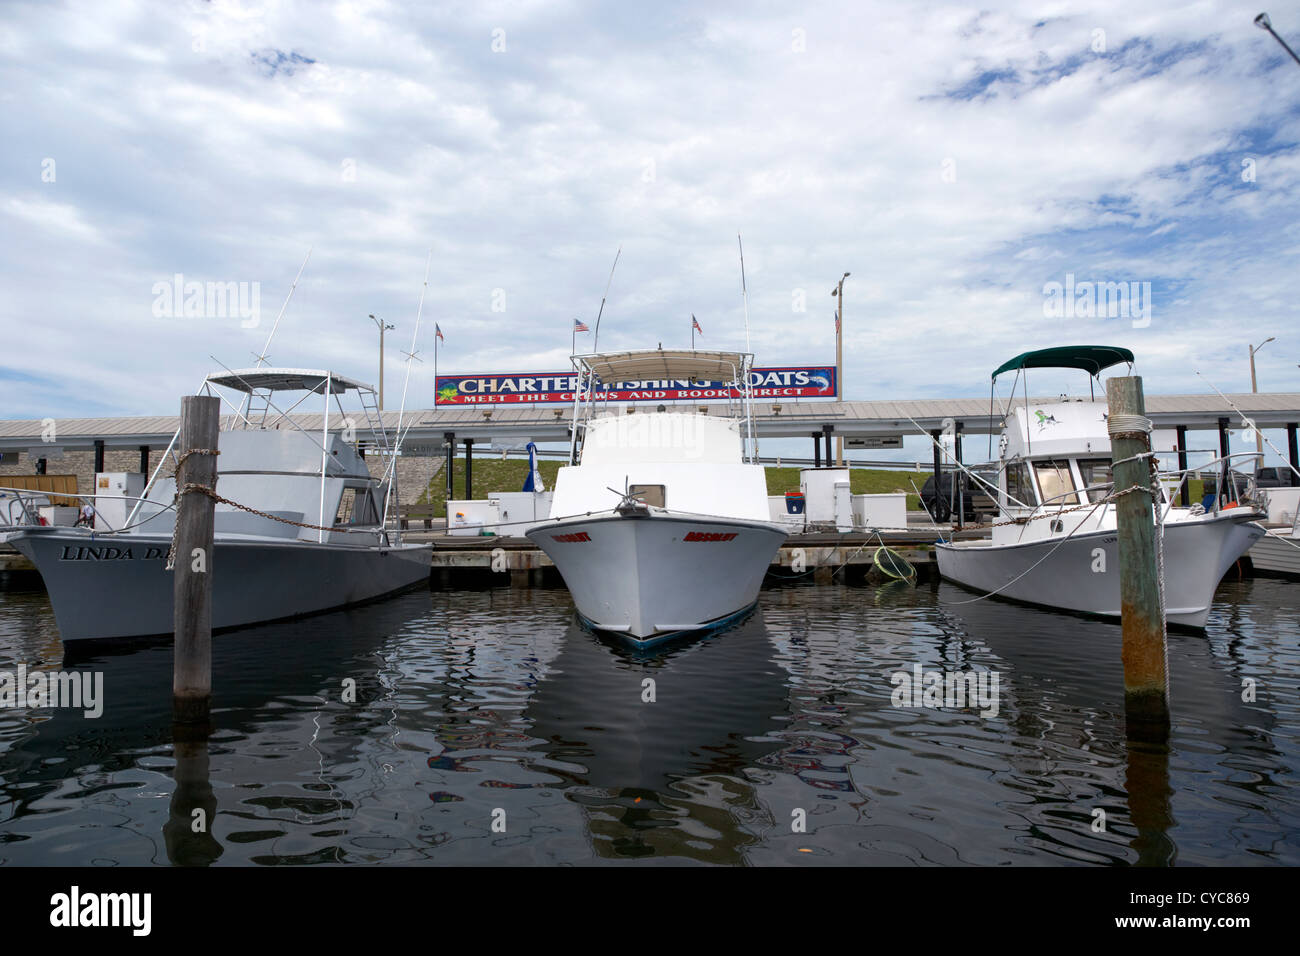 La location de bateaux de pêche bateau ligne city marina key west florida usa Banque D'Images